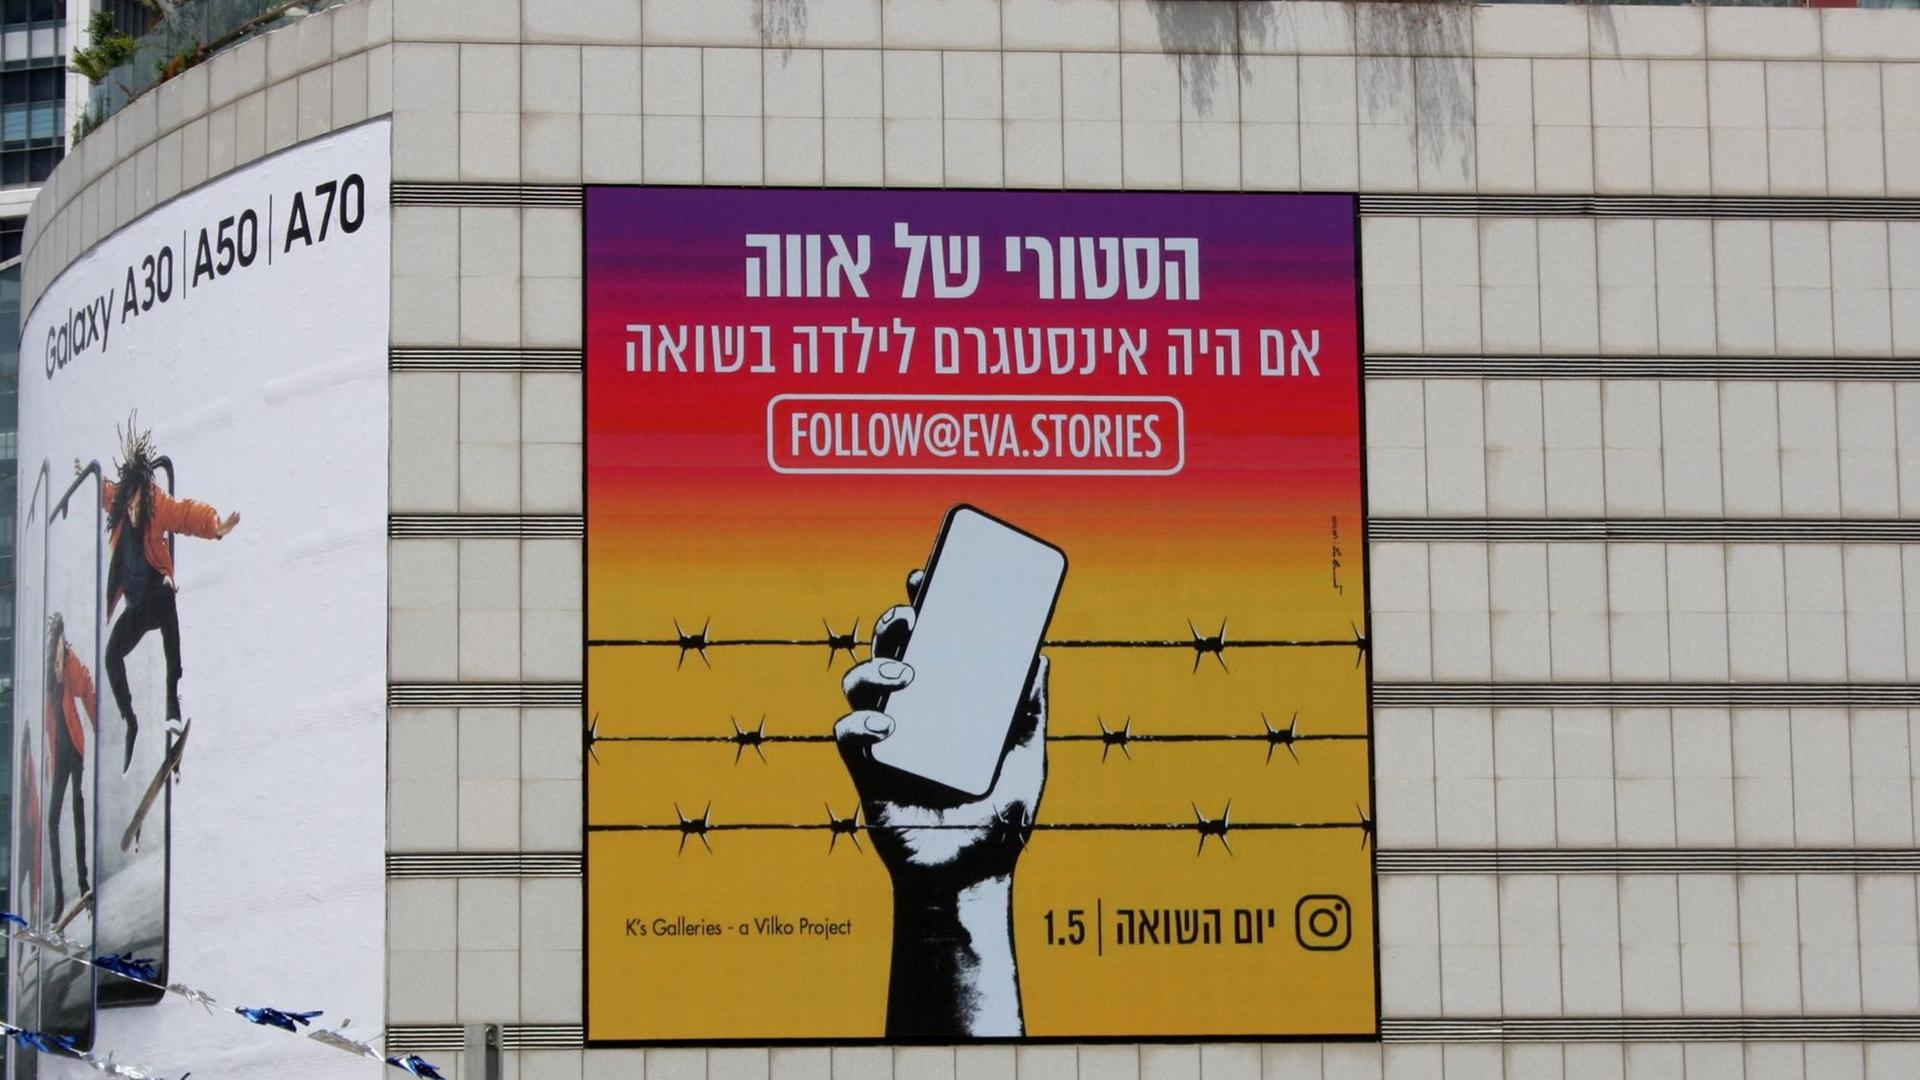 Die Werbung für das neue Holocaust-Gedenkprojekt "eva.stories" hängt an einer Wand in Israel. 